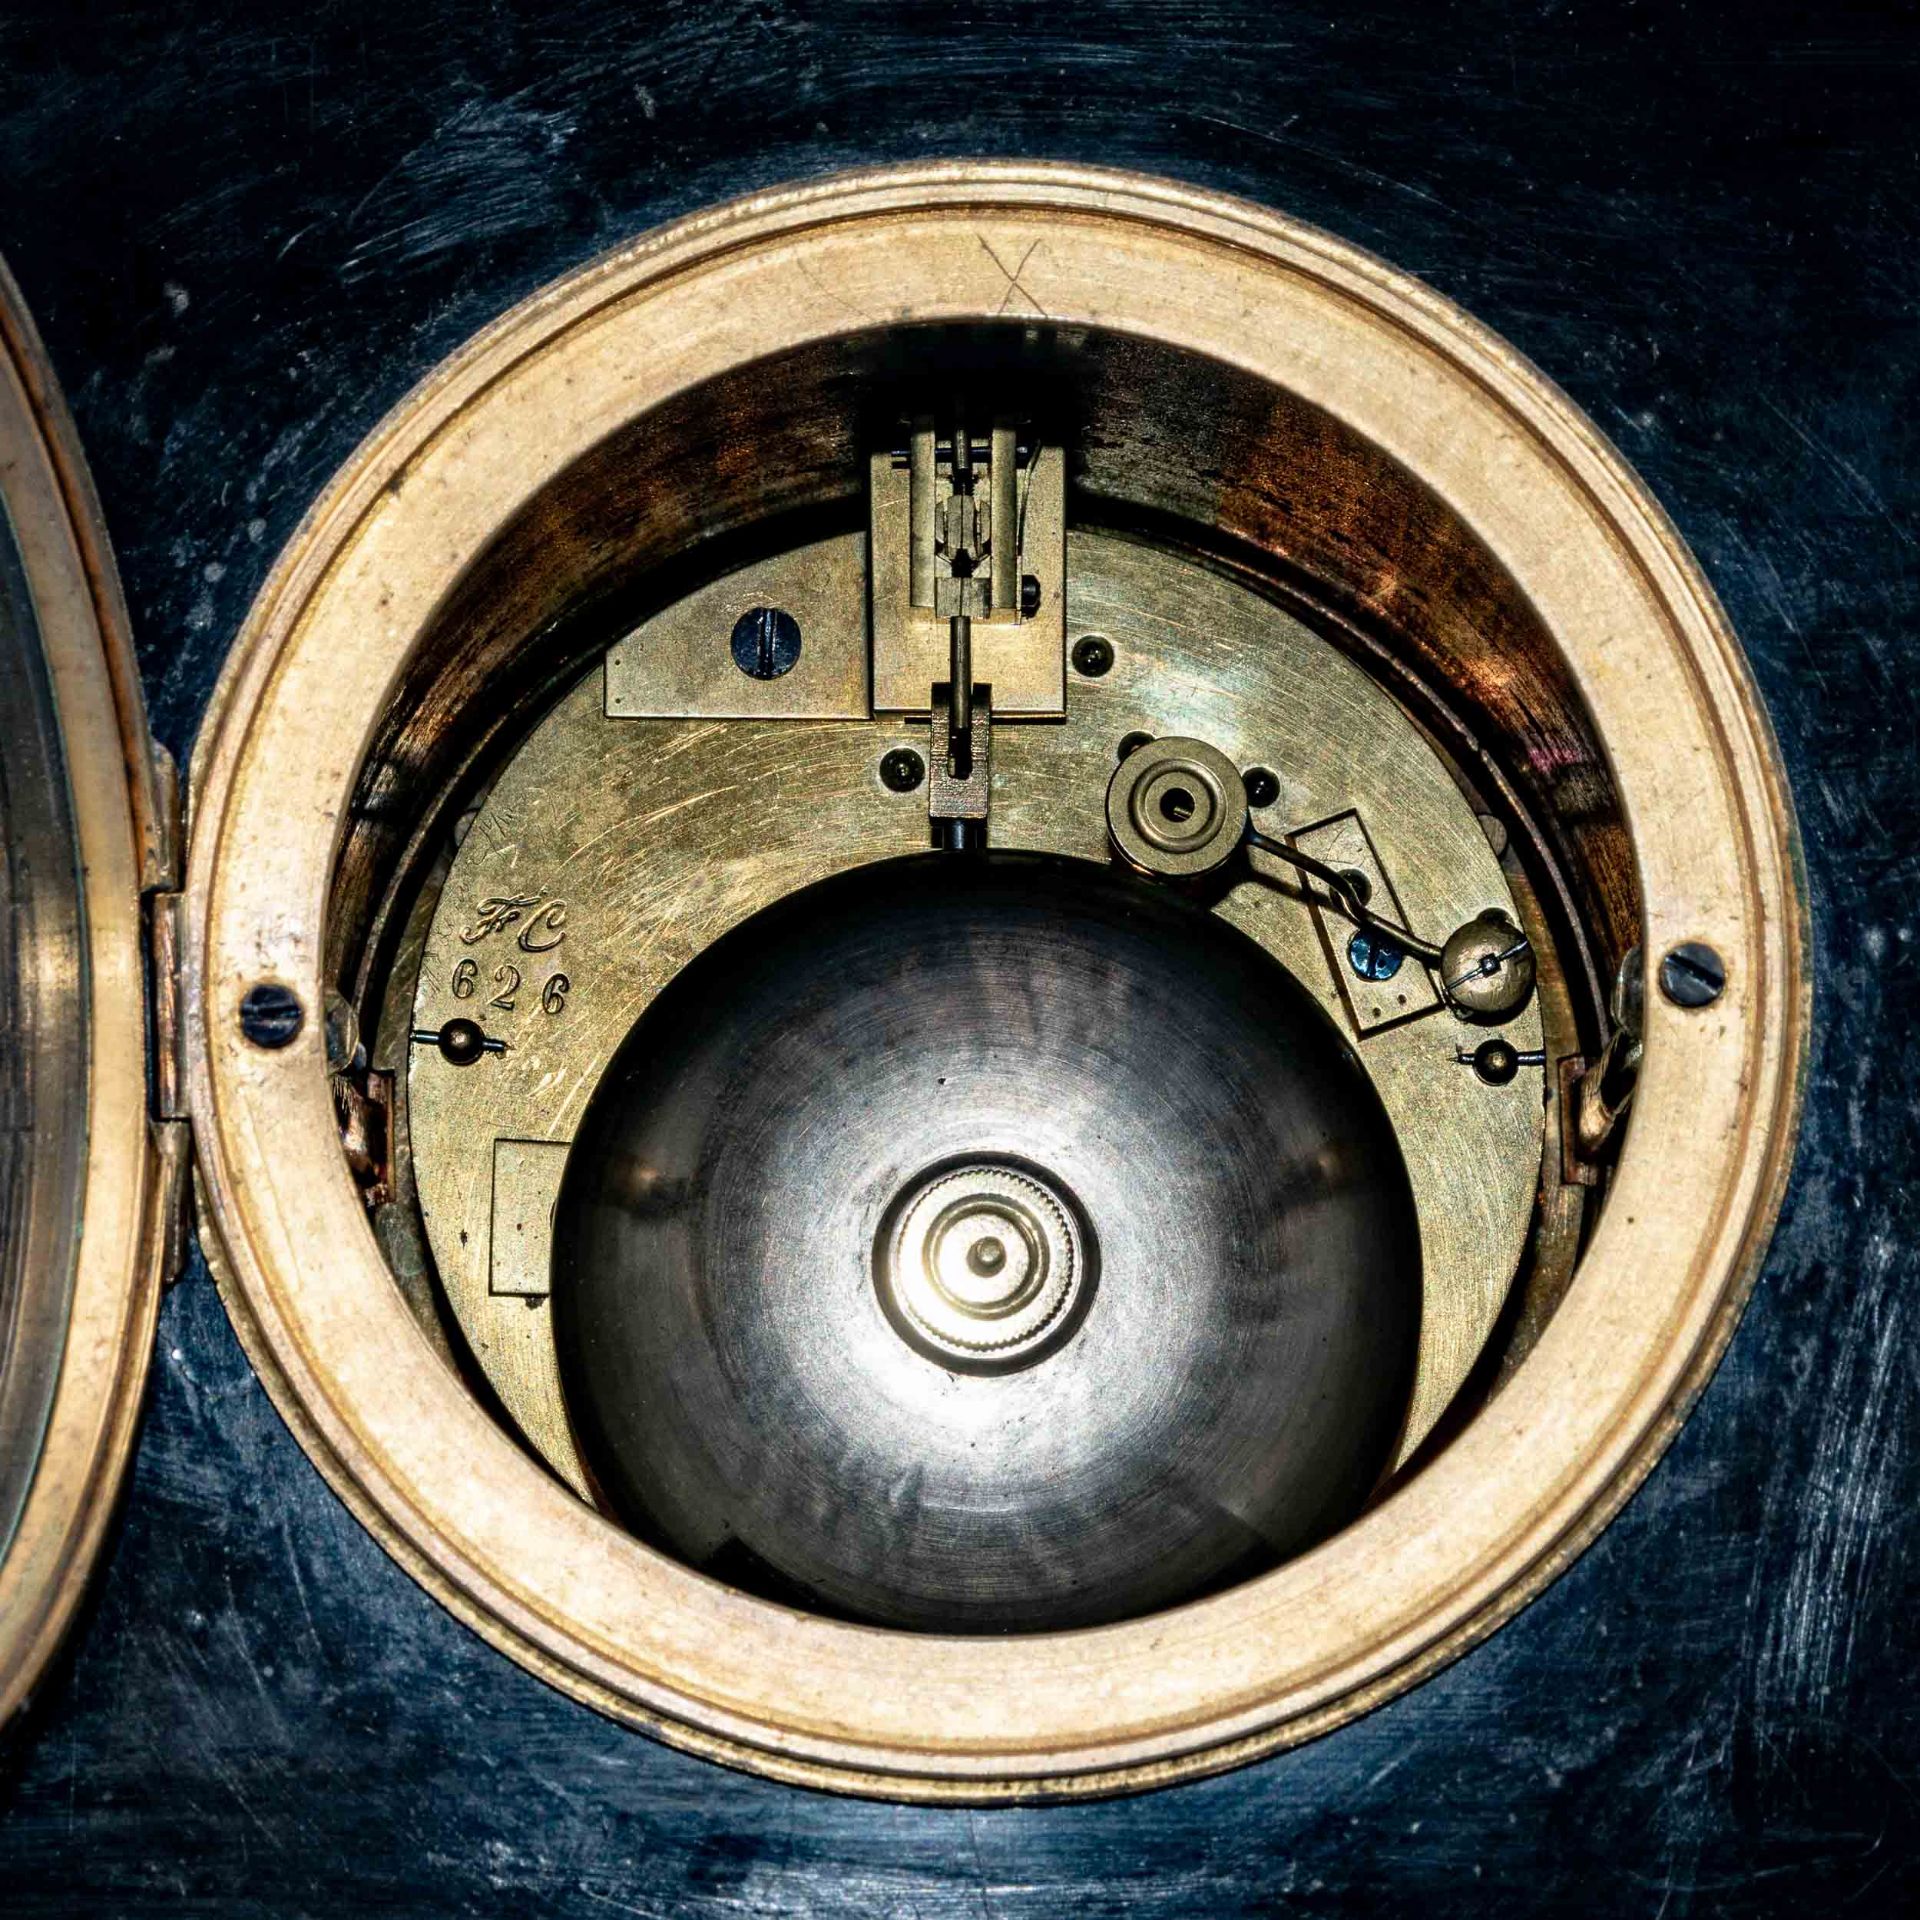 Schlichte schwarze Kaminuhr um 1900/20; schöner Erhalt, ungeprüftes mechanisches Uhrwerk mit Schlag - Bild 12 aus 12